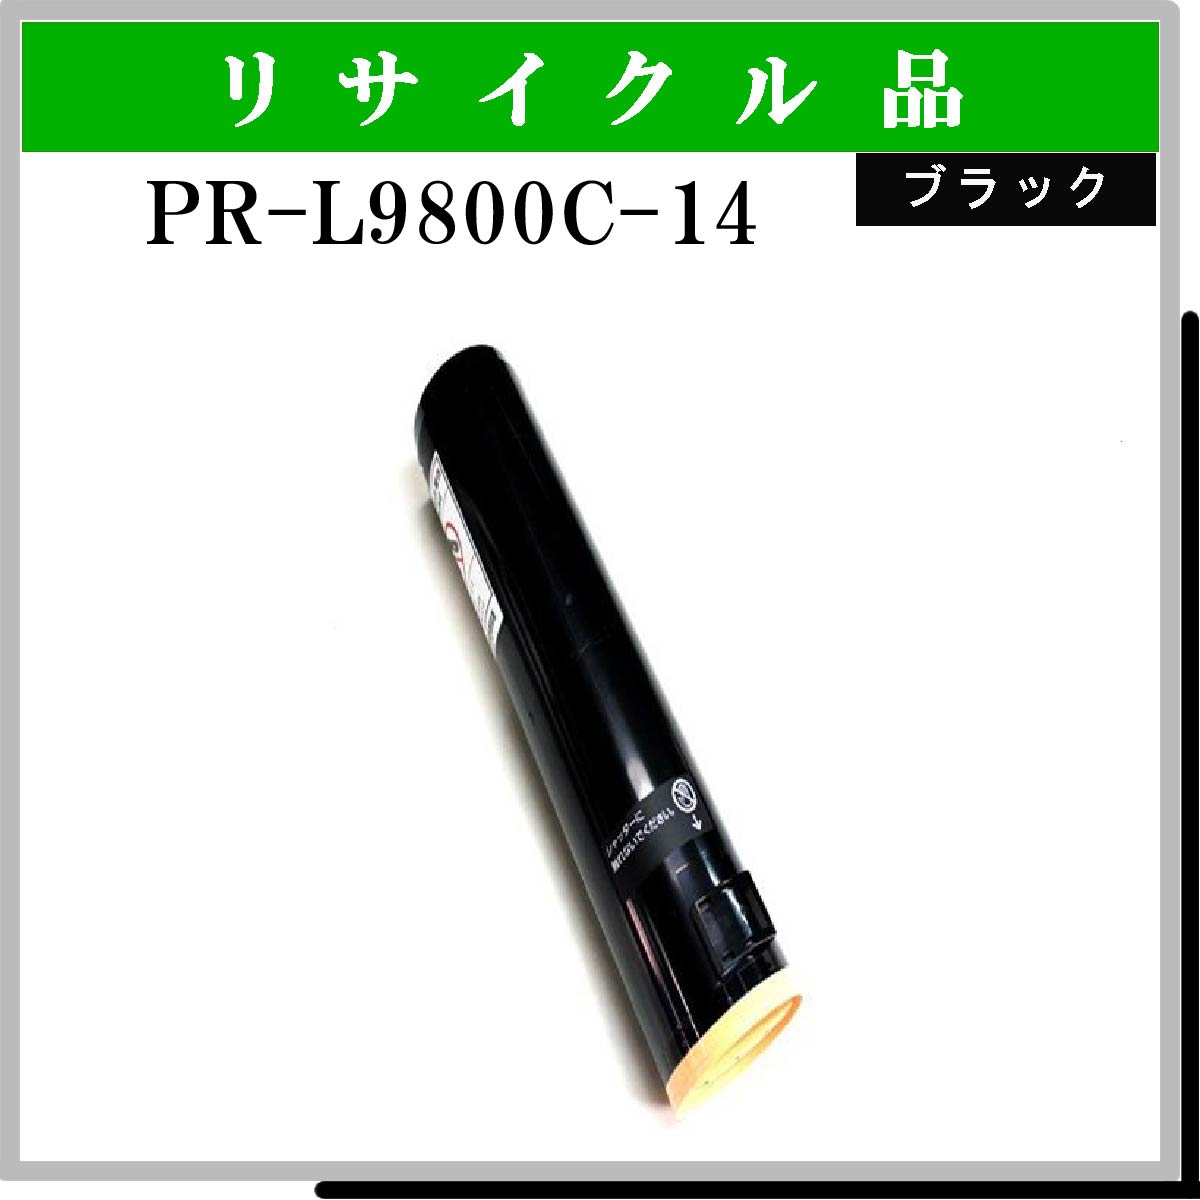 PR-L9800C-14